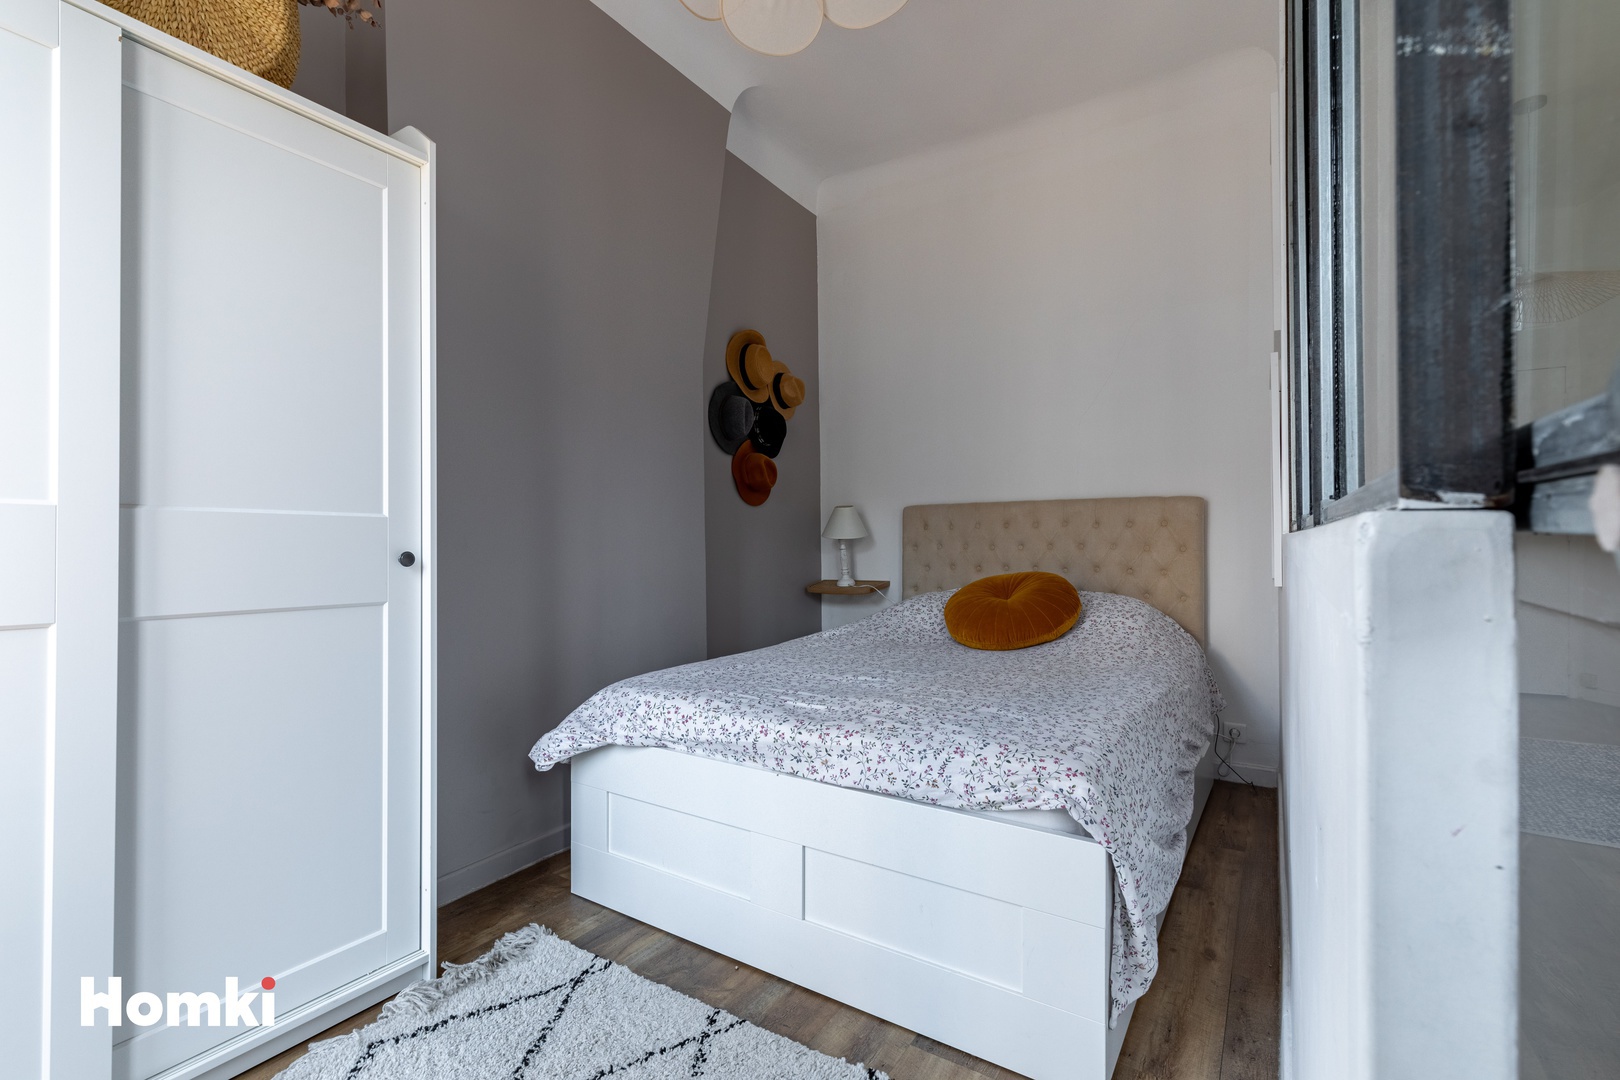 Homki - Vente Appartement  de 46.0 m² à Marseille 13006